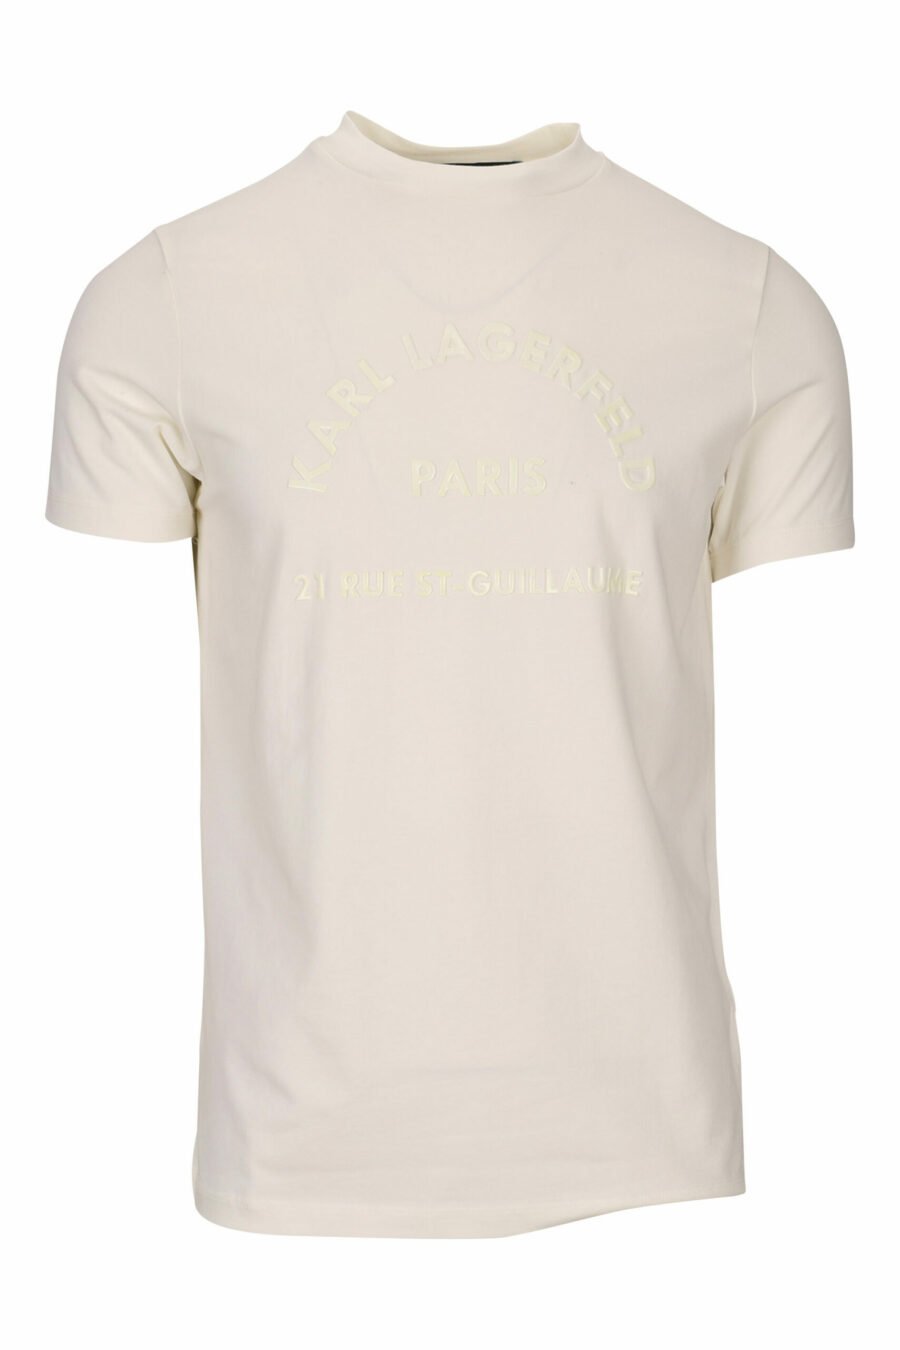 T-shirt branca com maxilogo monocromático "rue st guillaume" - 4062226678124 scaled